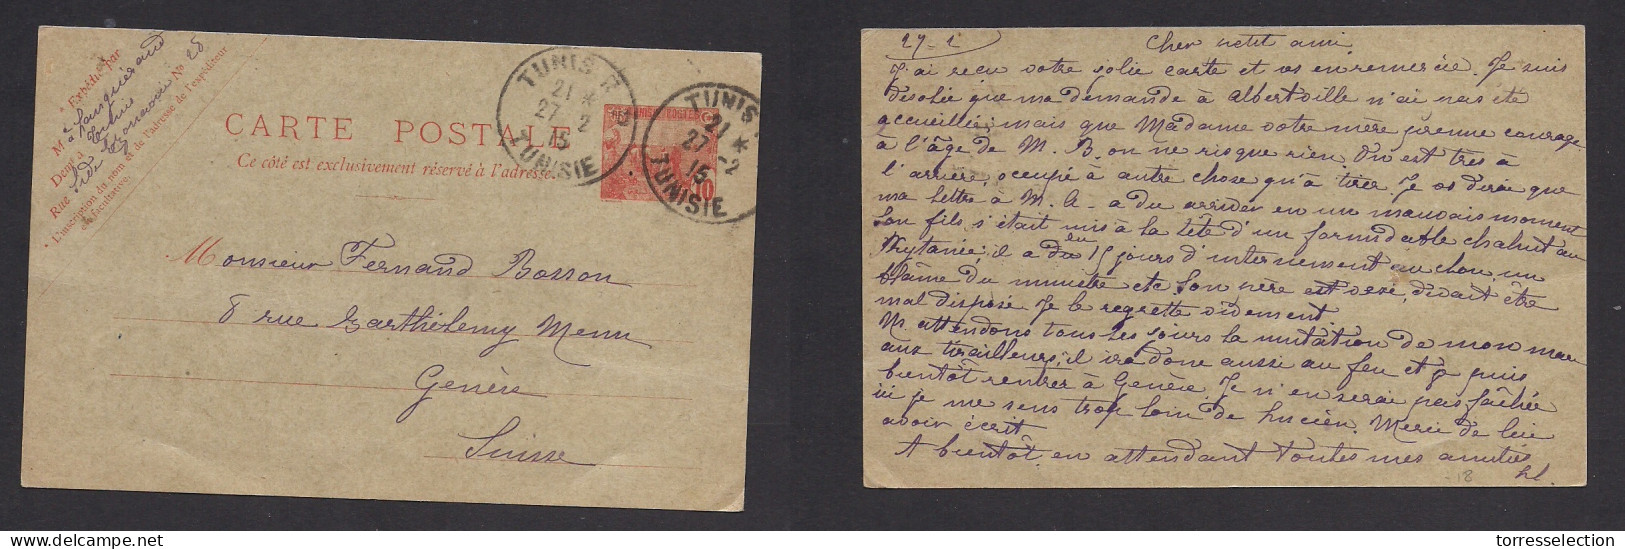 TUNISIA. 1915 (27 Febr) Tunis RP - Switzerland, Geneve. 10c Red Stat Card. VF Used. XSALE. - Tunisia